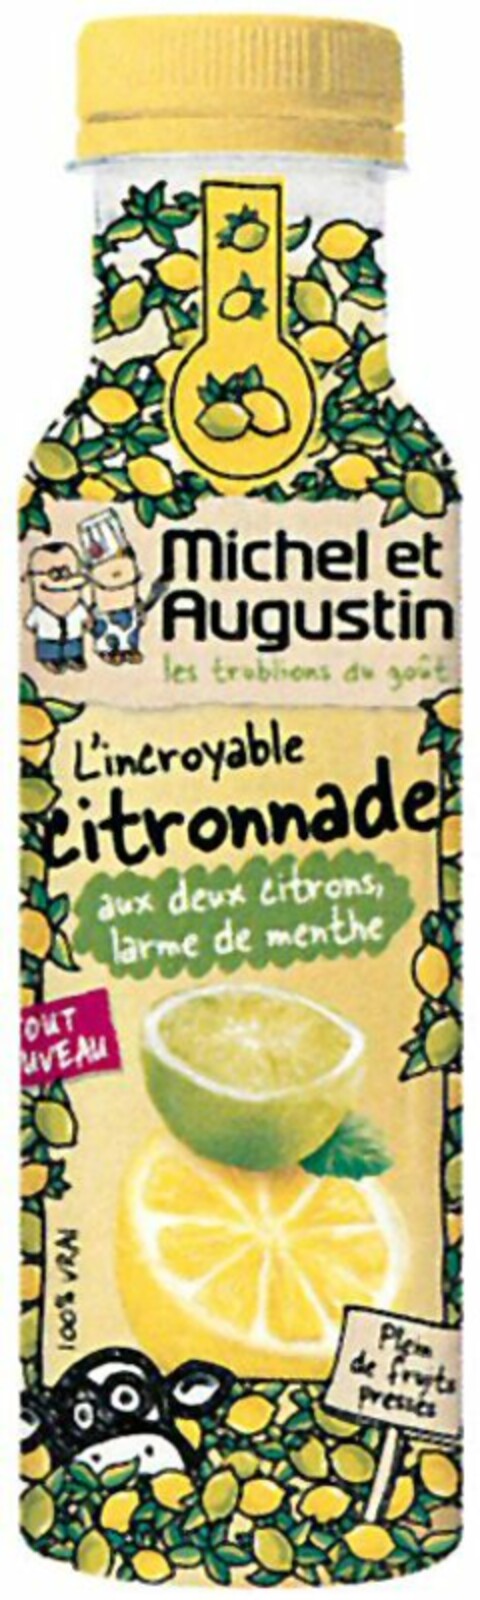 Michel et Augustin les troublions du goût L'incroyable citronnade aux deux citrons, larme de menthe Plein de fruits pressés Logo (WIPO, 19.12.2014)